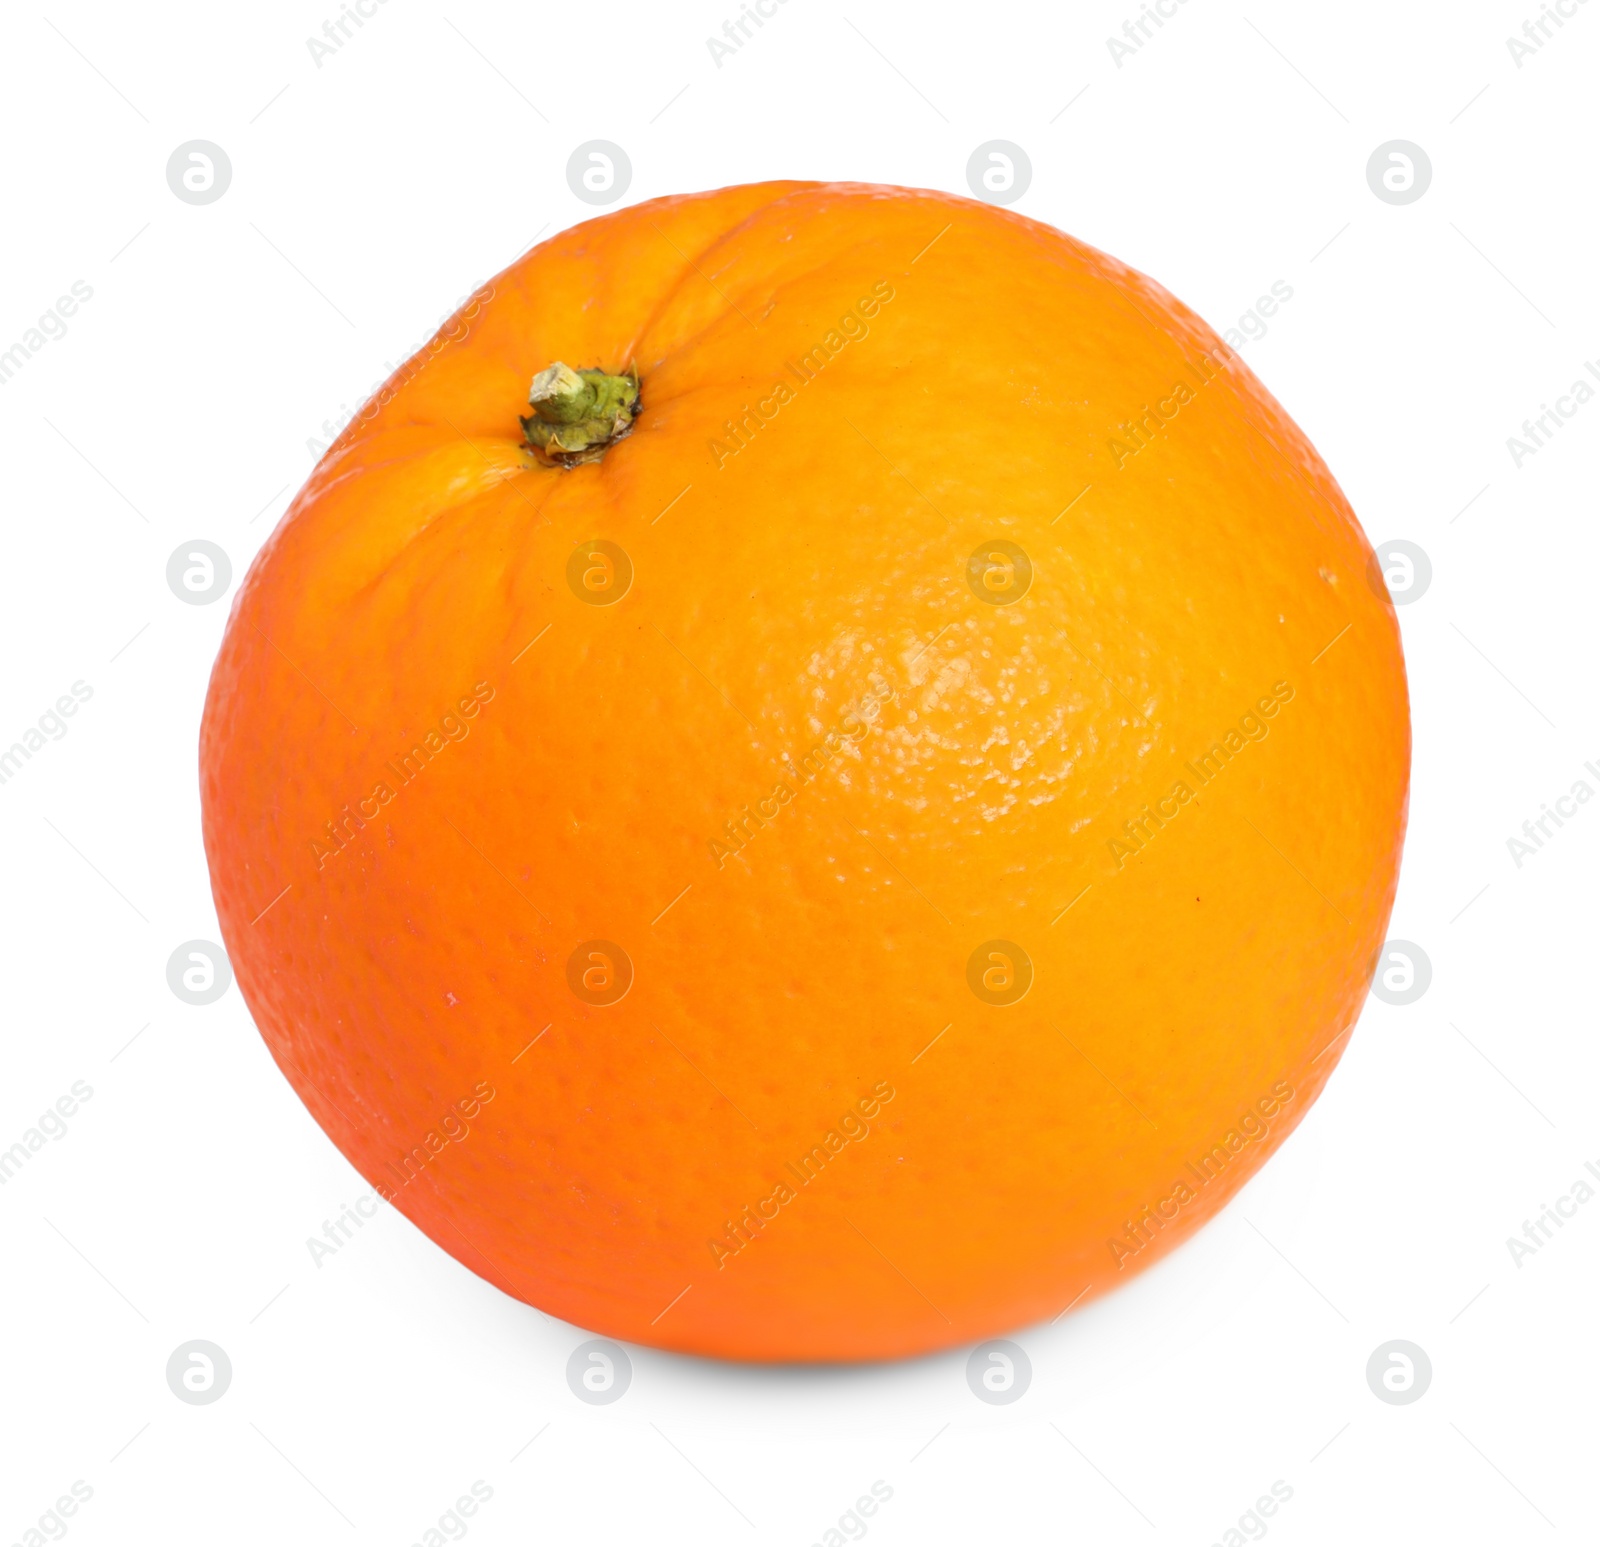 Photo of Citrus fruit. One fresh orange isolated on white